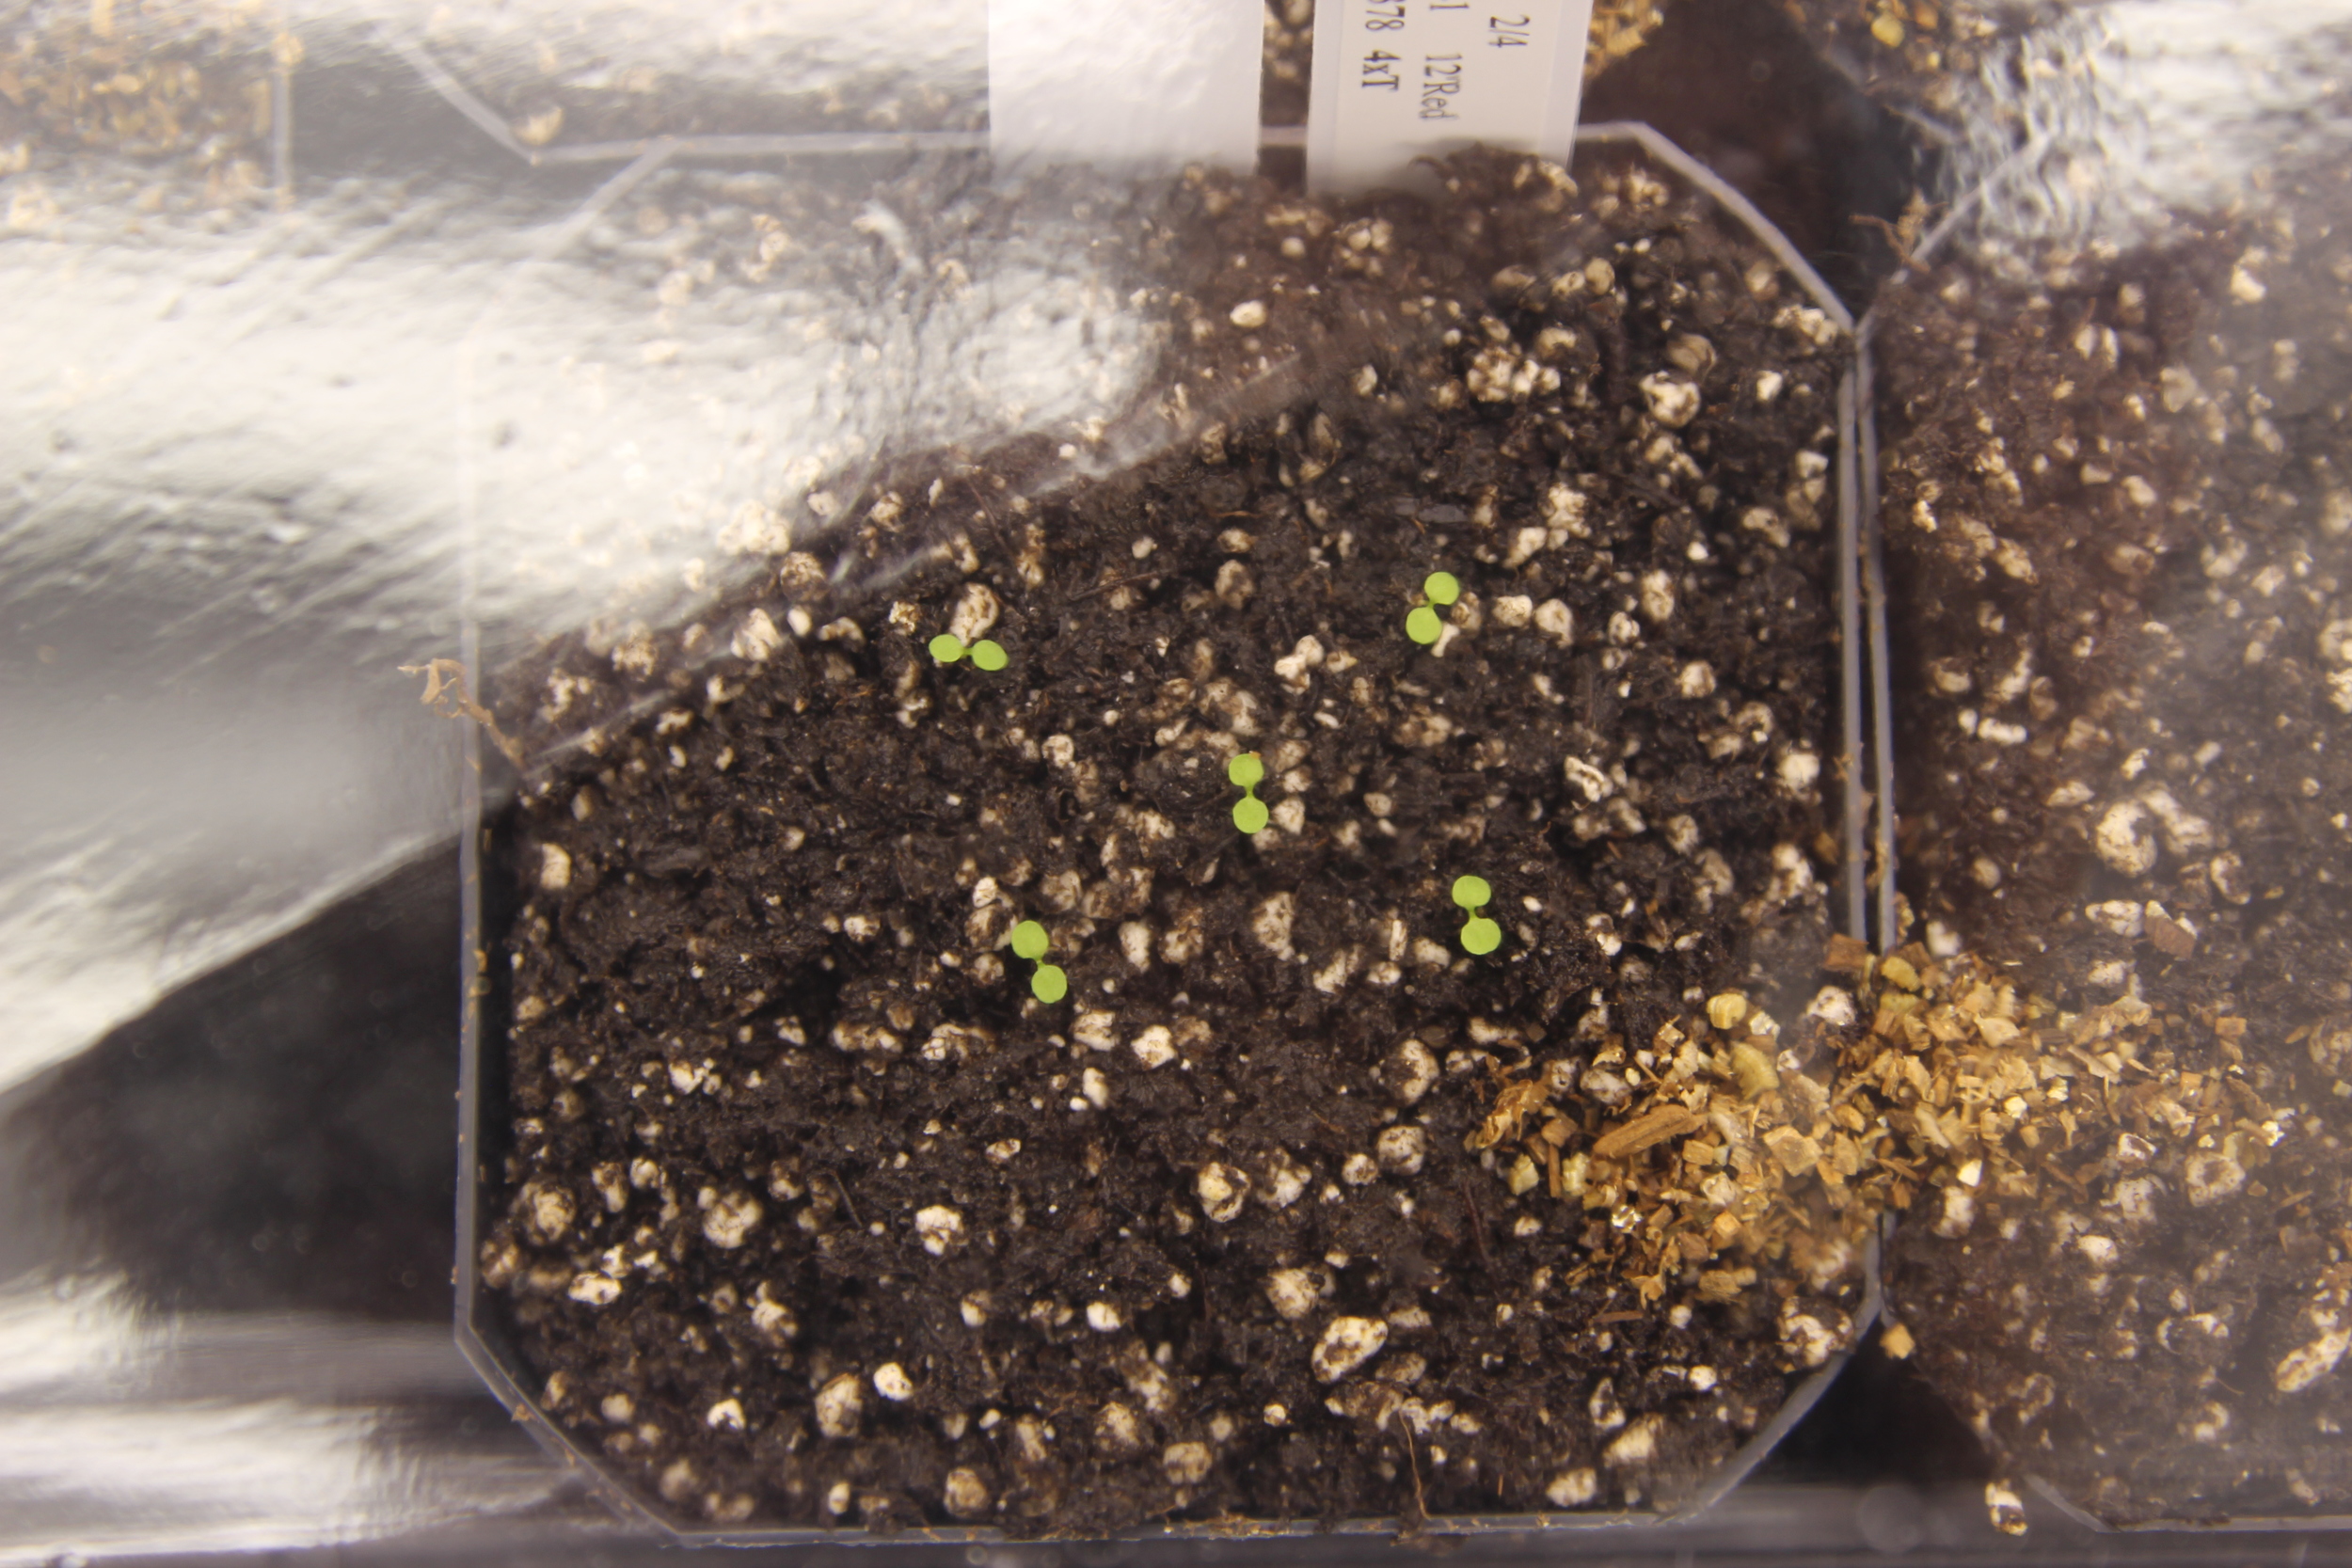 Arabidopsis seedlings